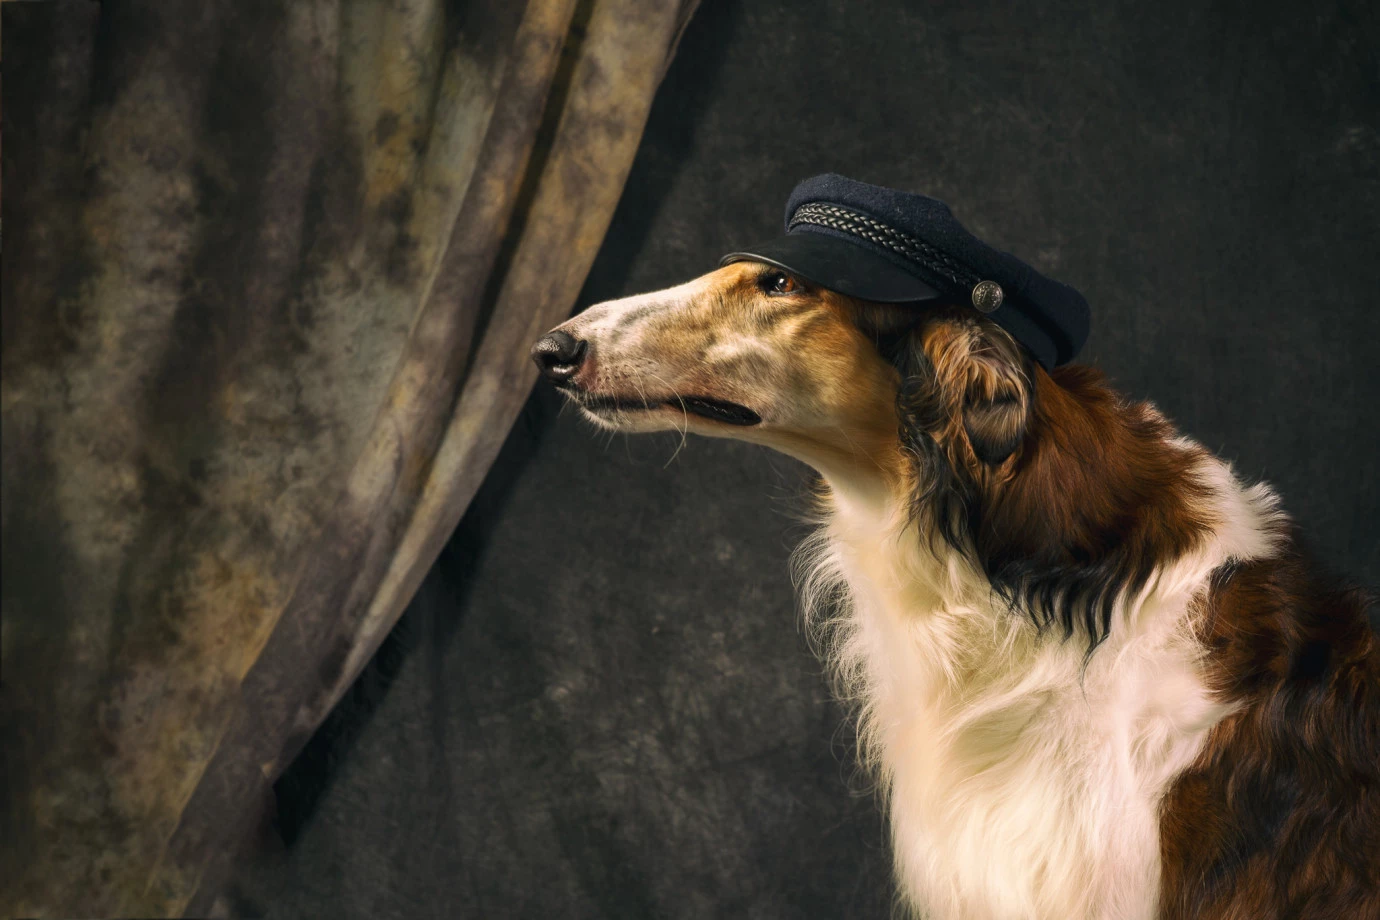 fotograf wroclaw inoinu portfolio zdjecia zdjecia zwierzat sesja zdjeciowa konie psy koty